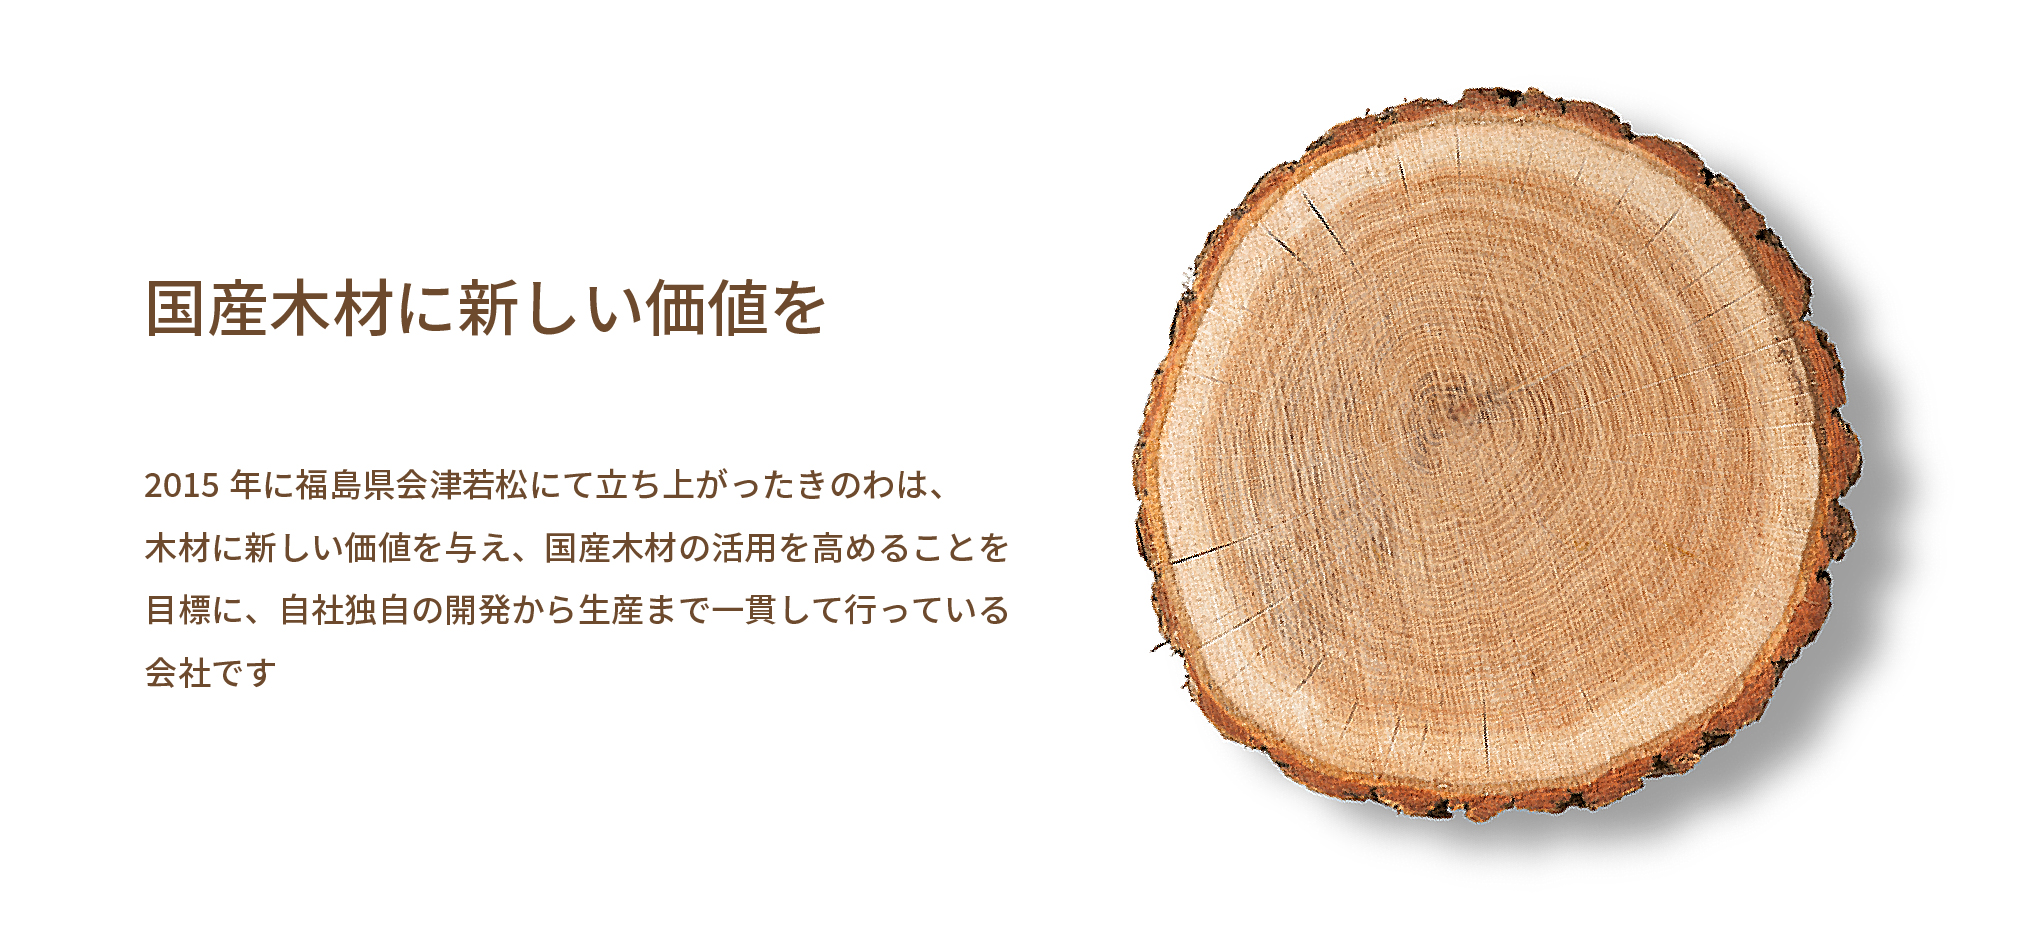 国産木材に新しい価値を